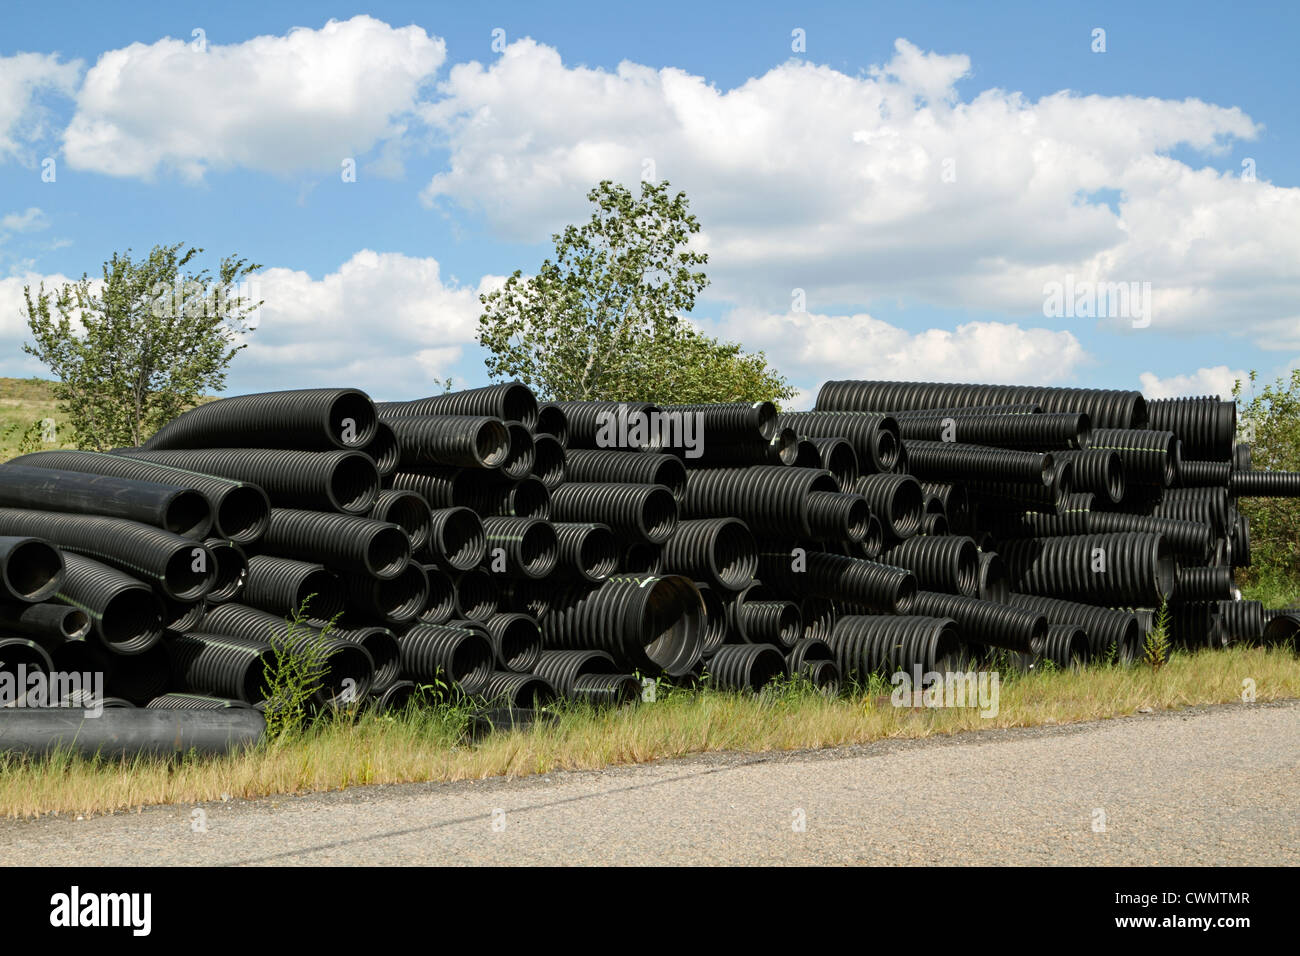 A stockpile of flexible construction conduits Stock Photo